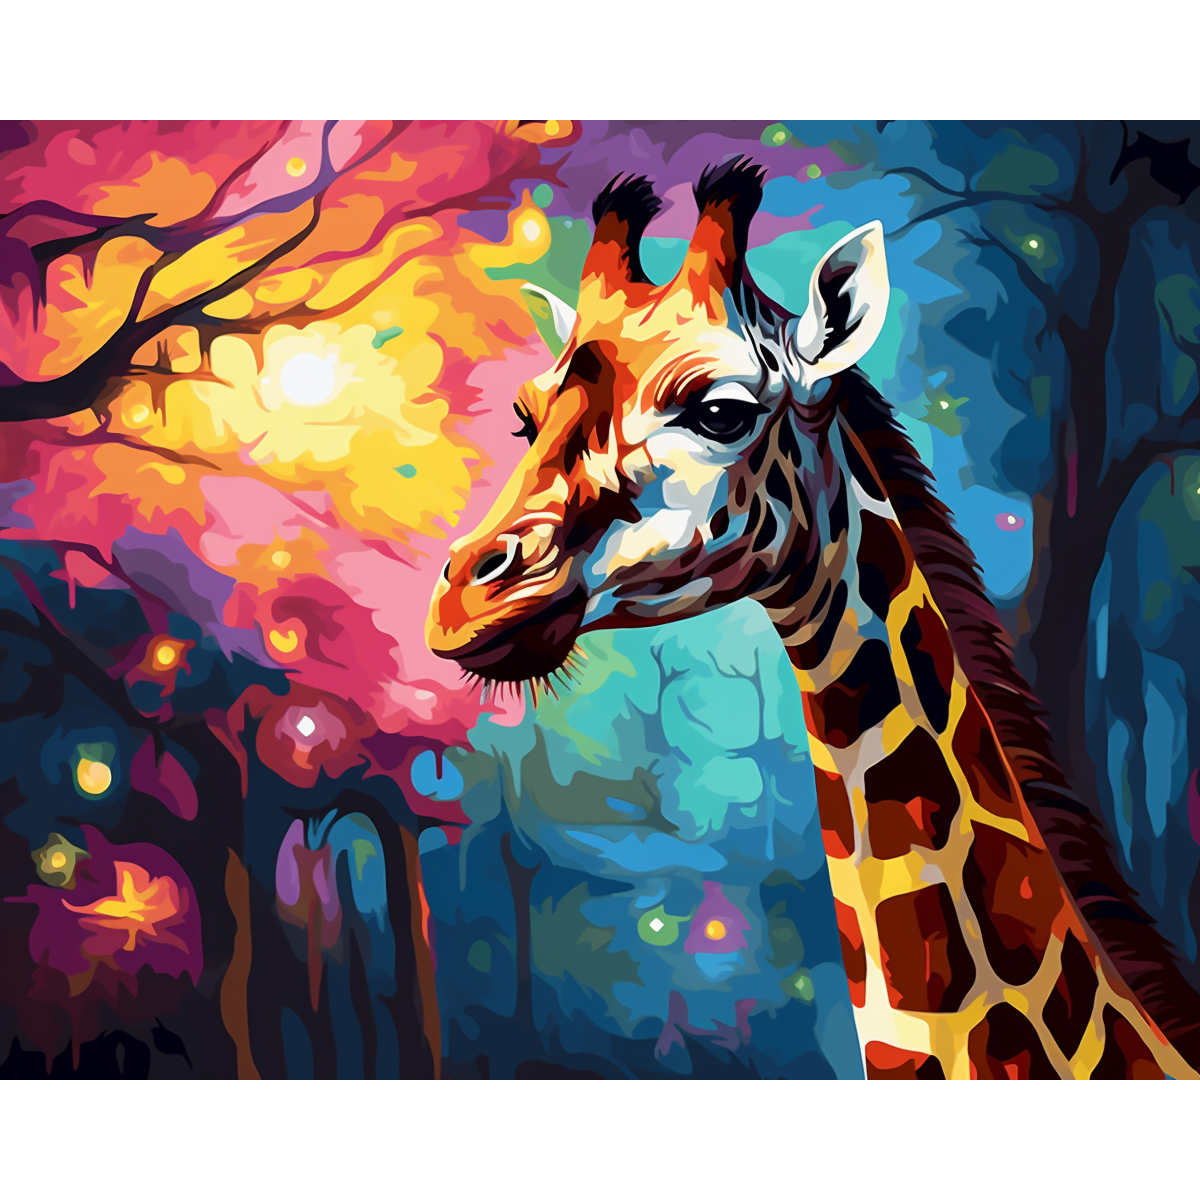 Giraffa ad altezze illuminate